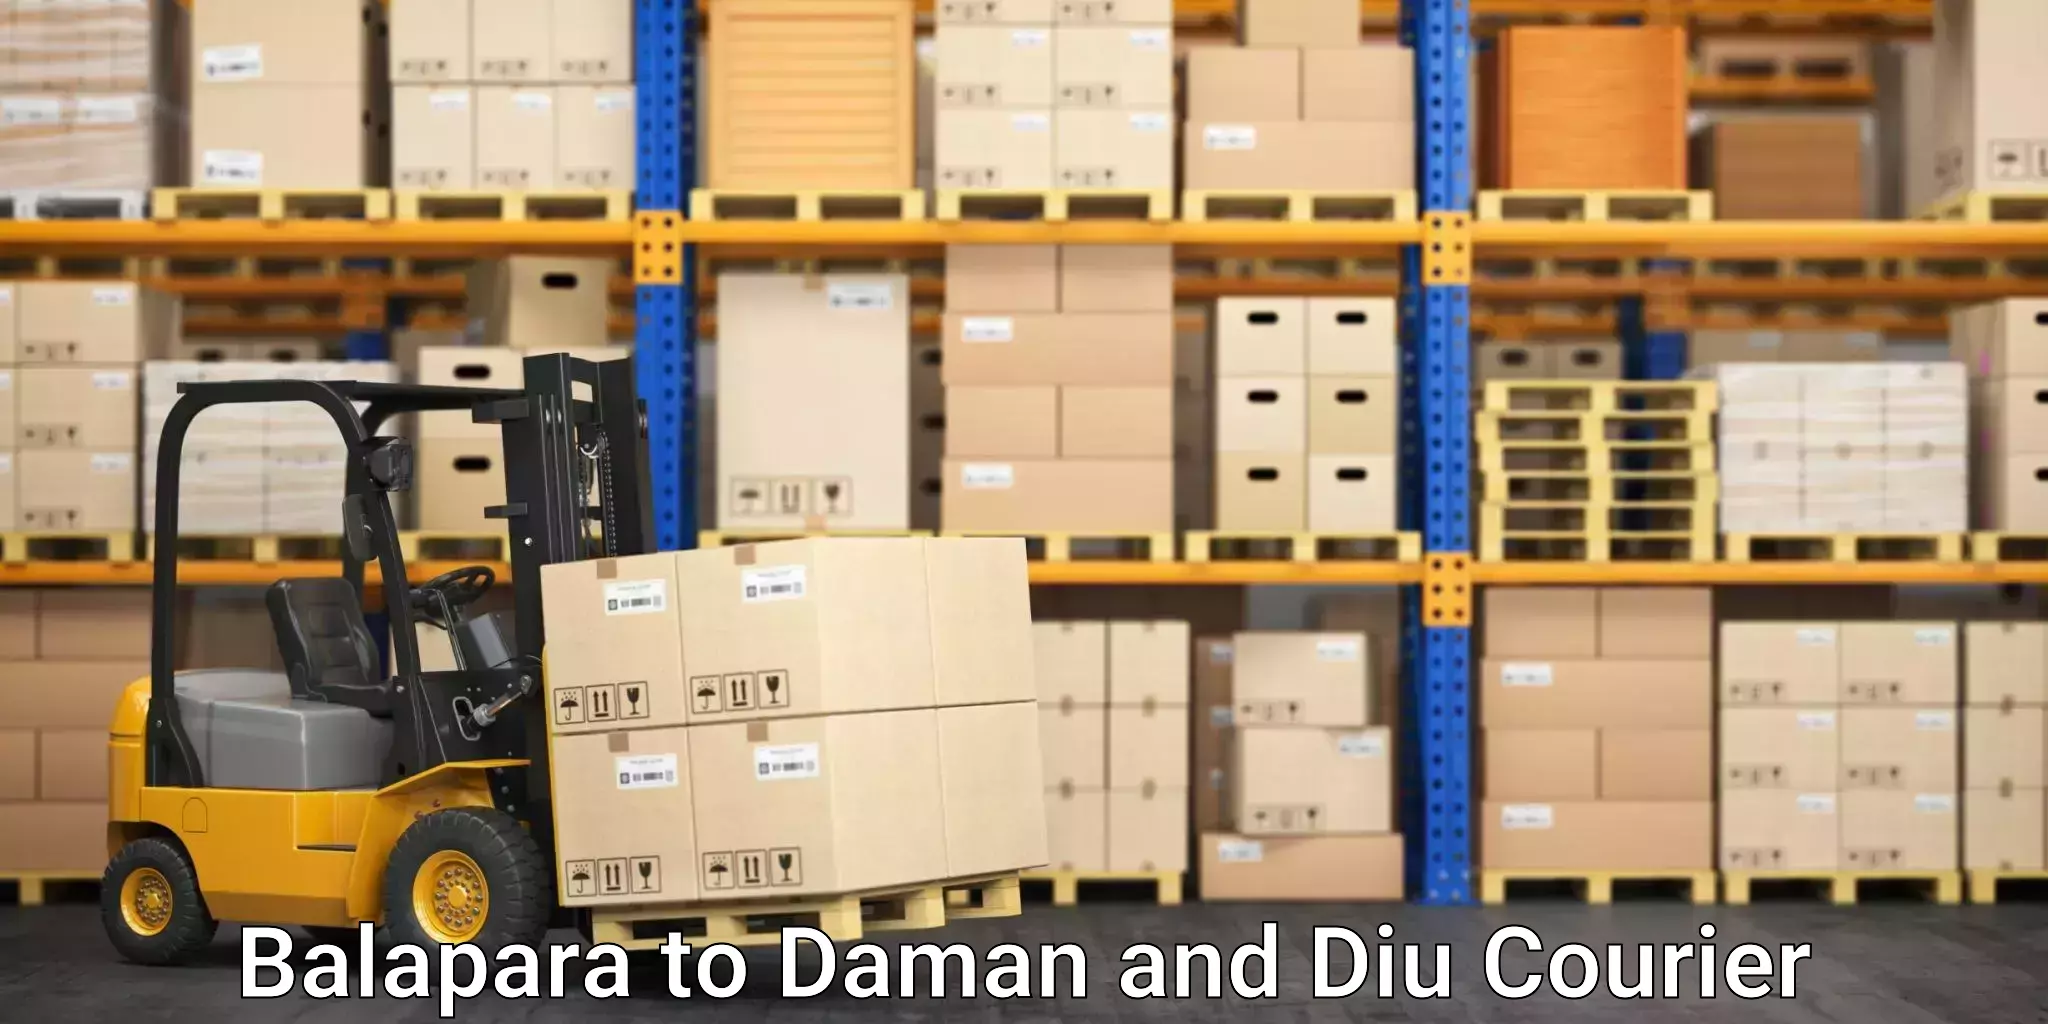 Door-to-door freight service Balapara to Daman and Diu